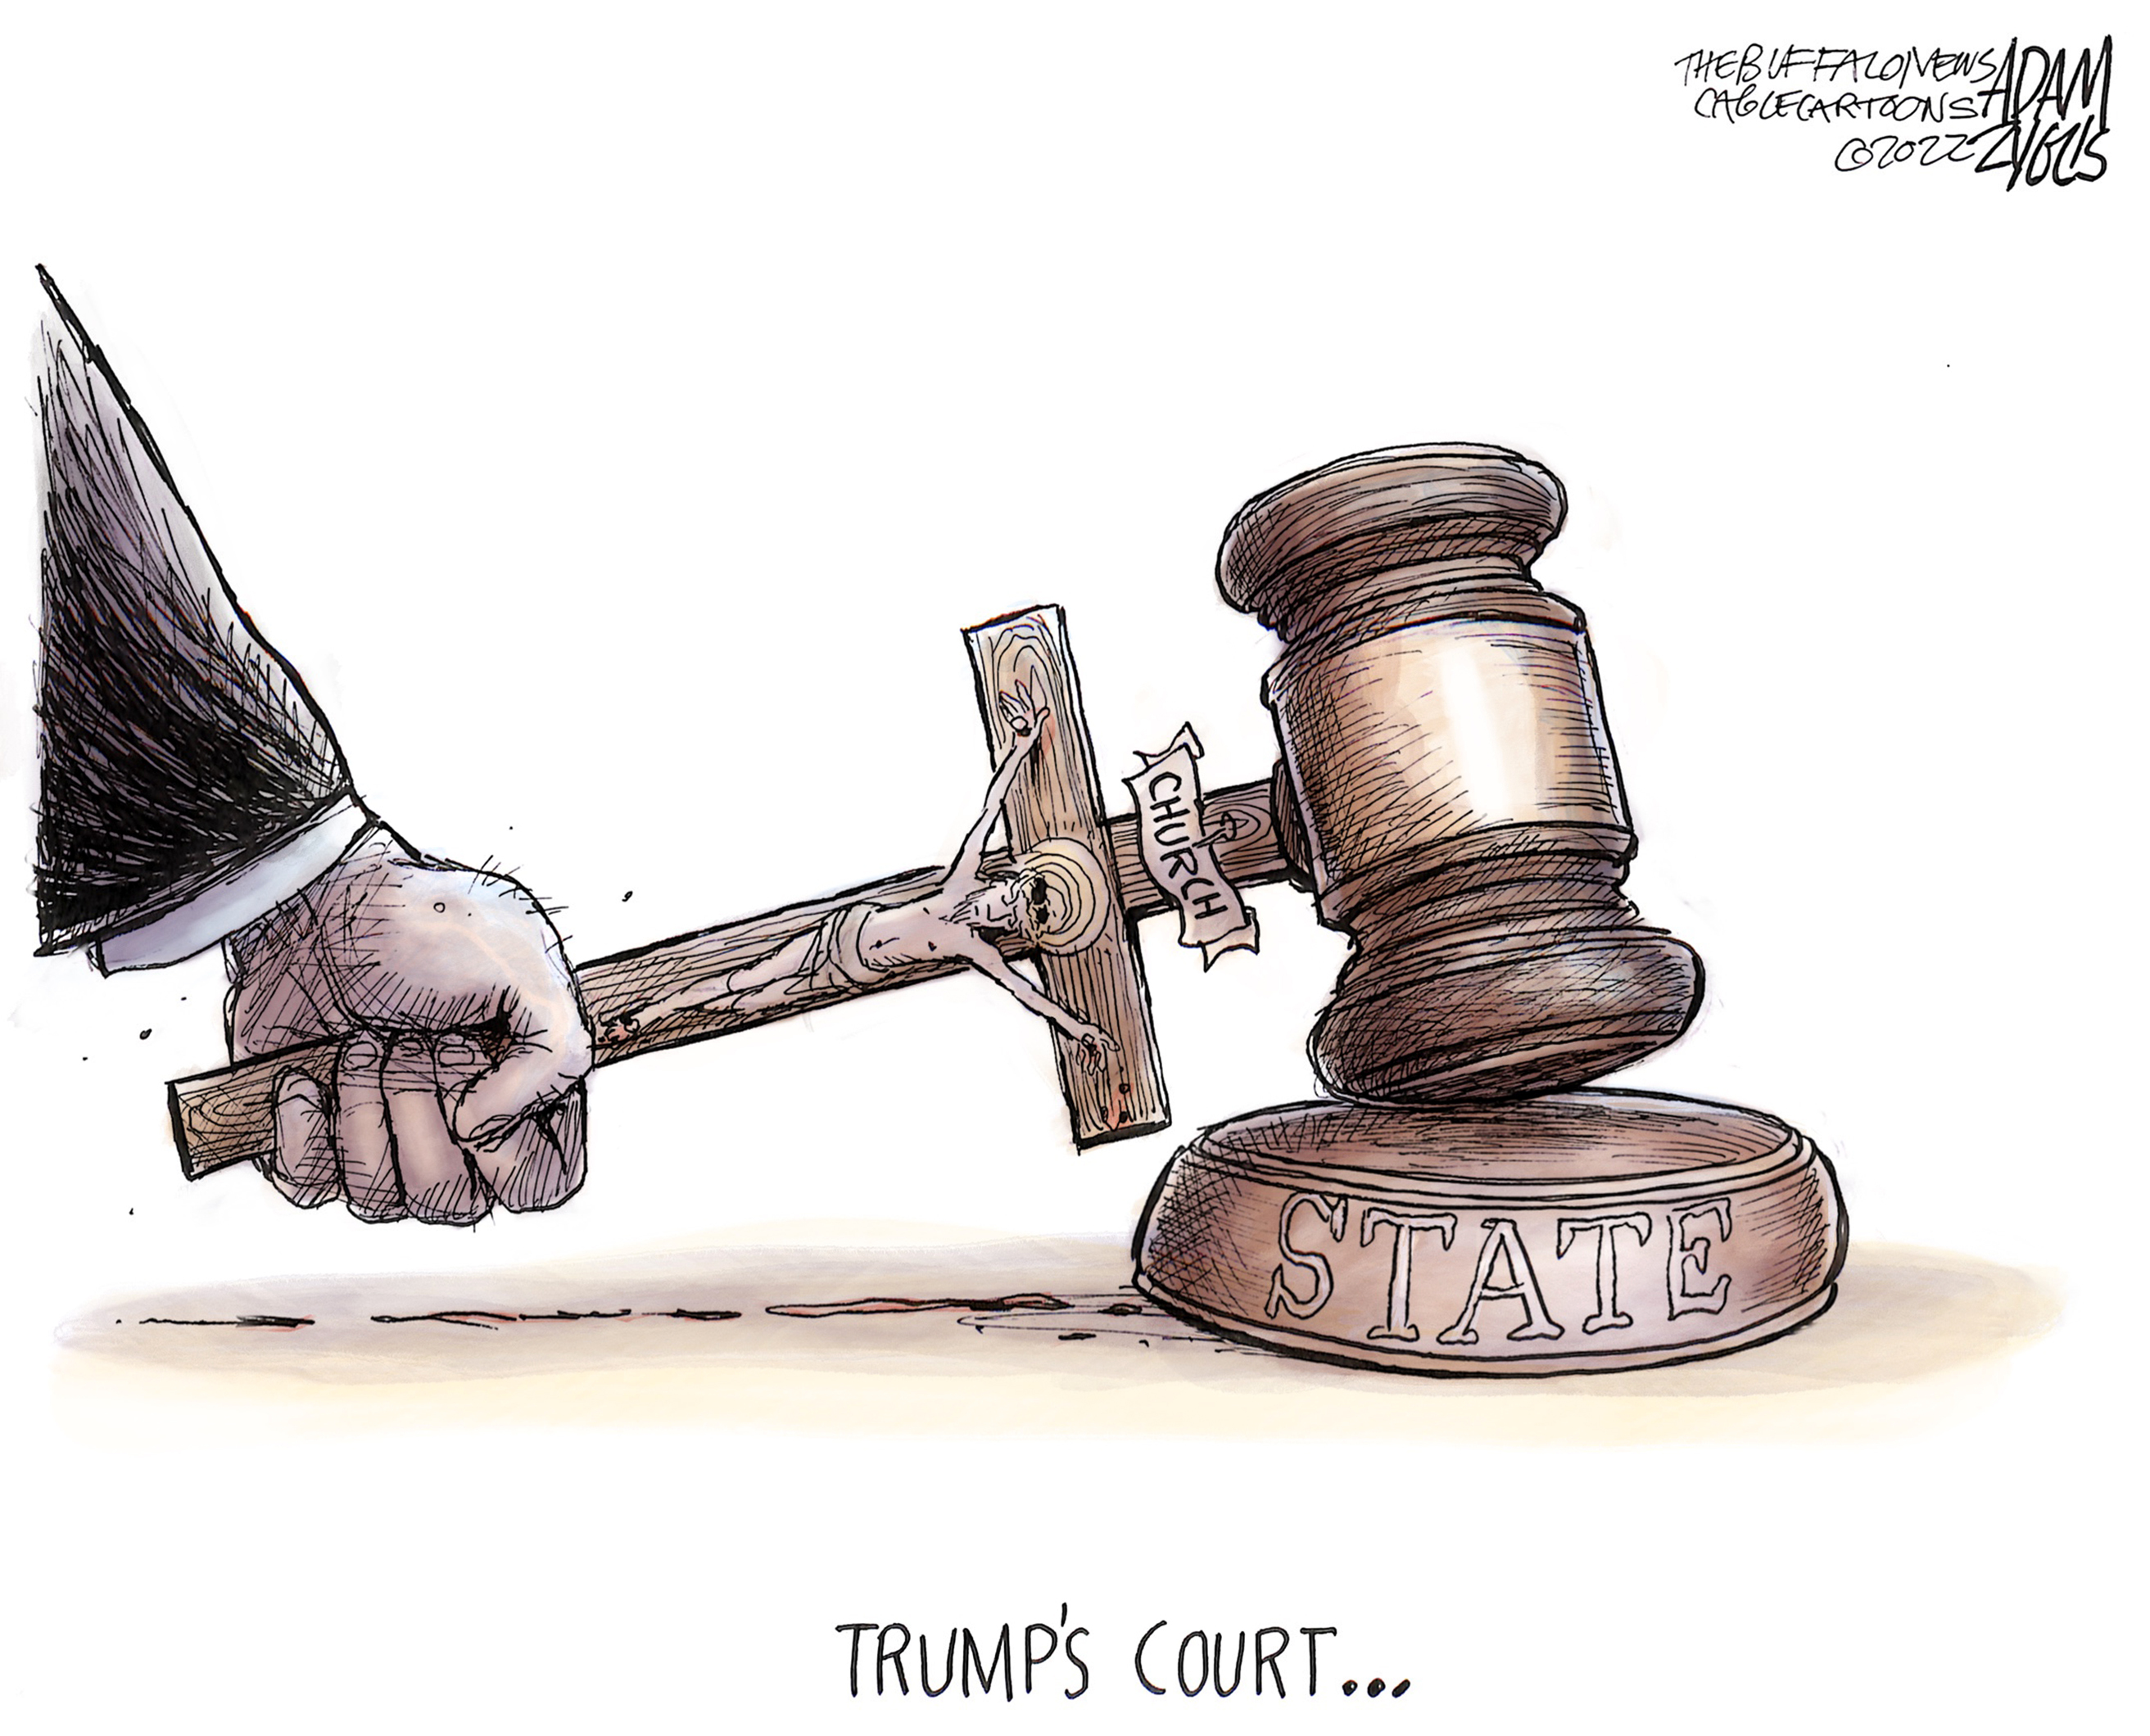 judicial review political cartoon